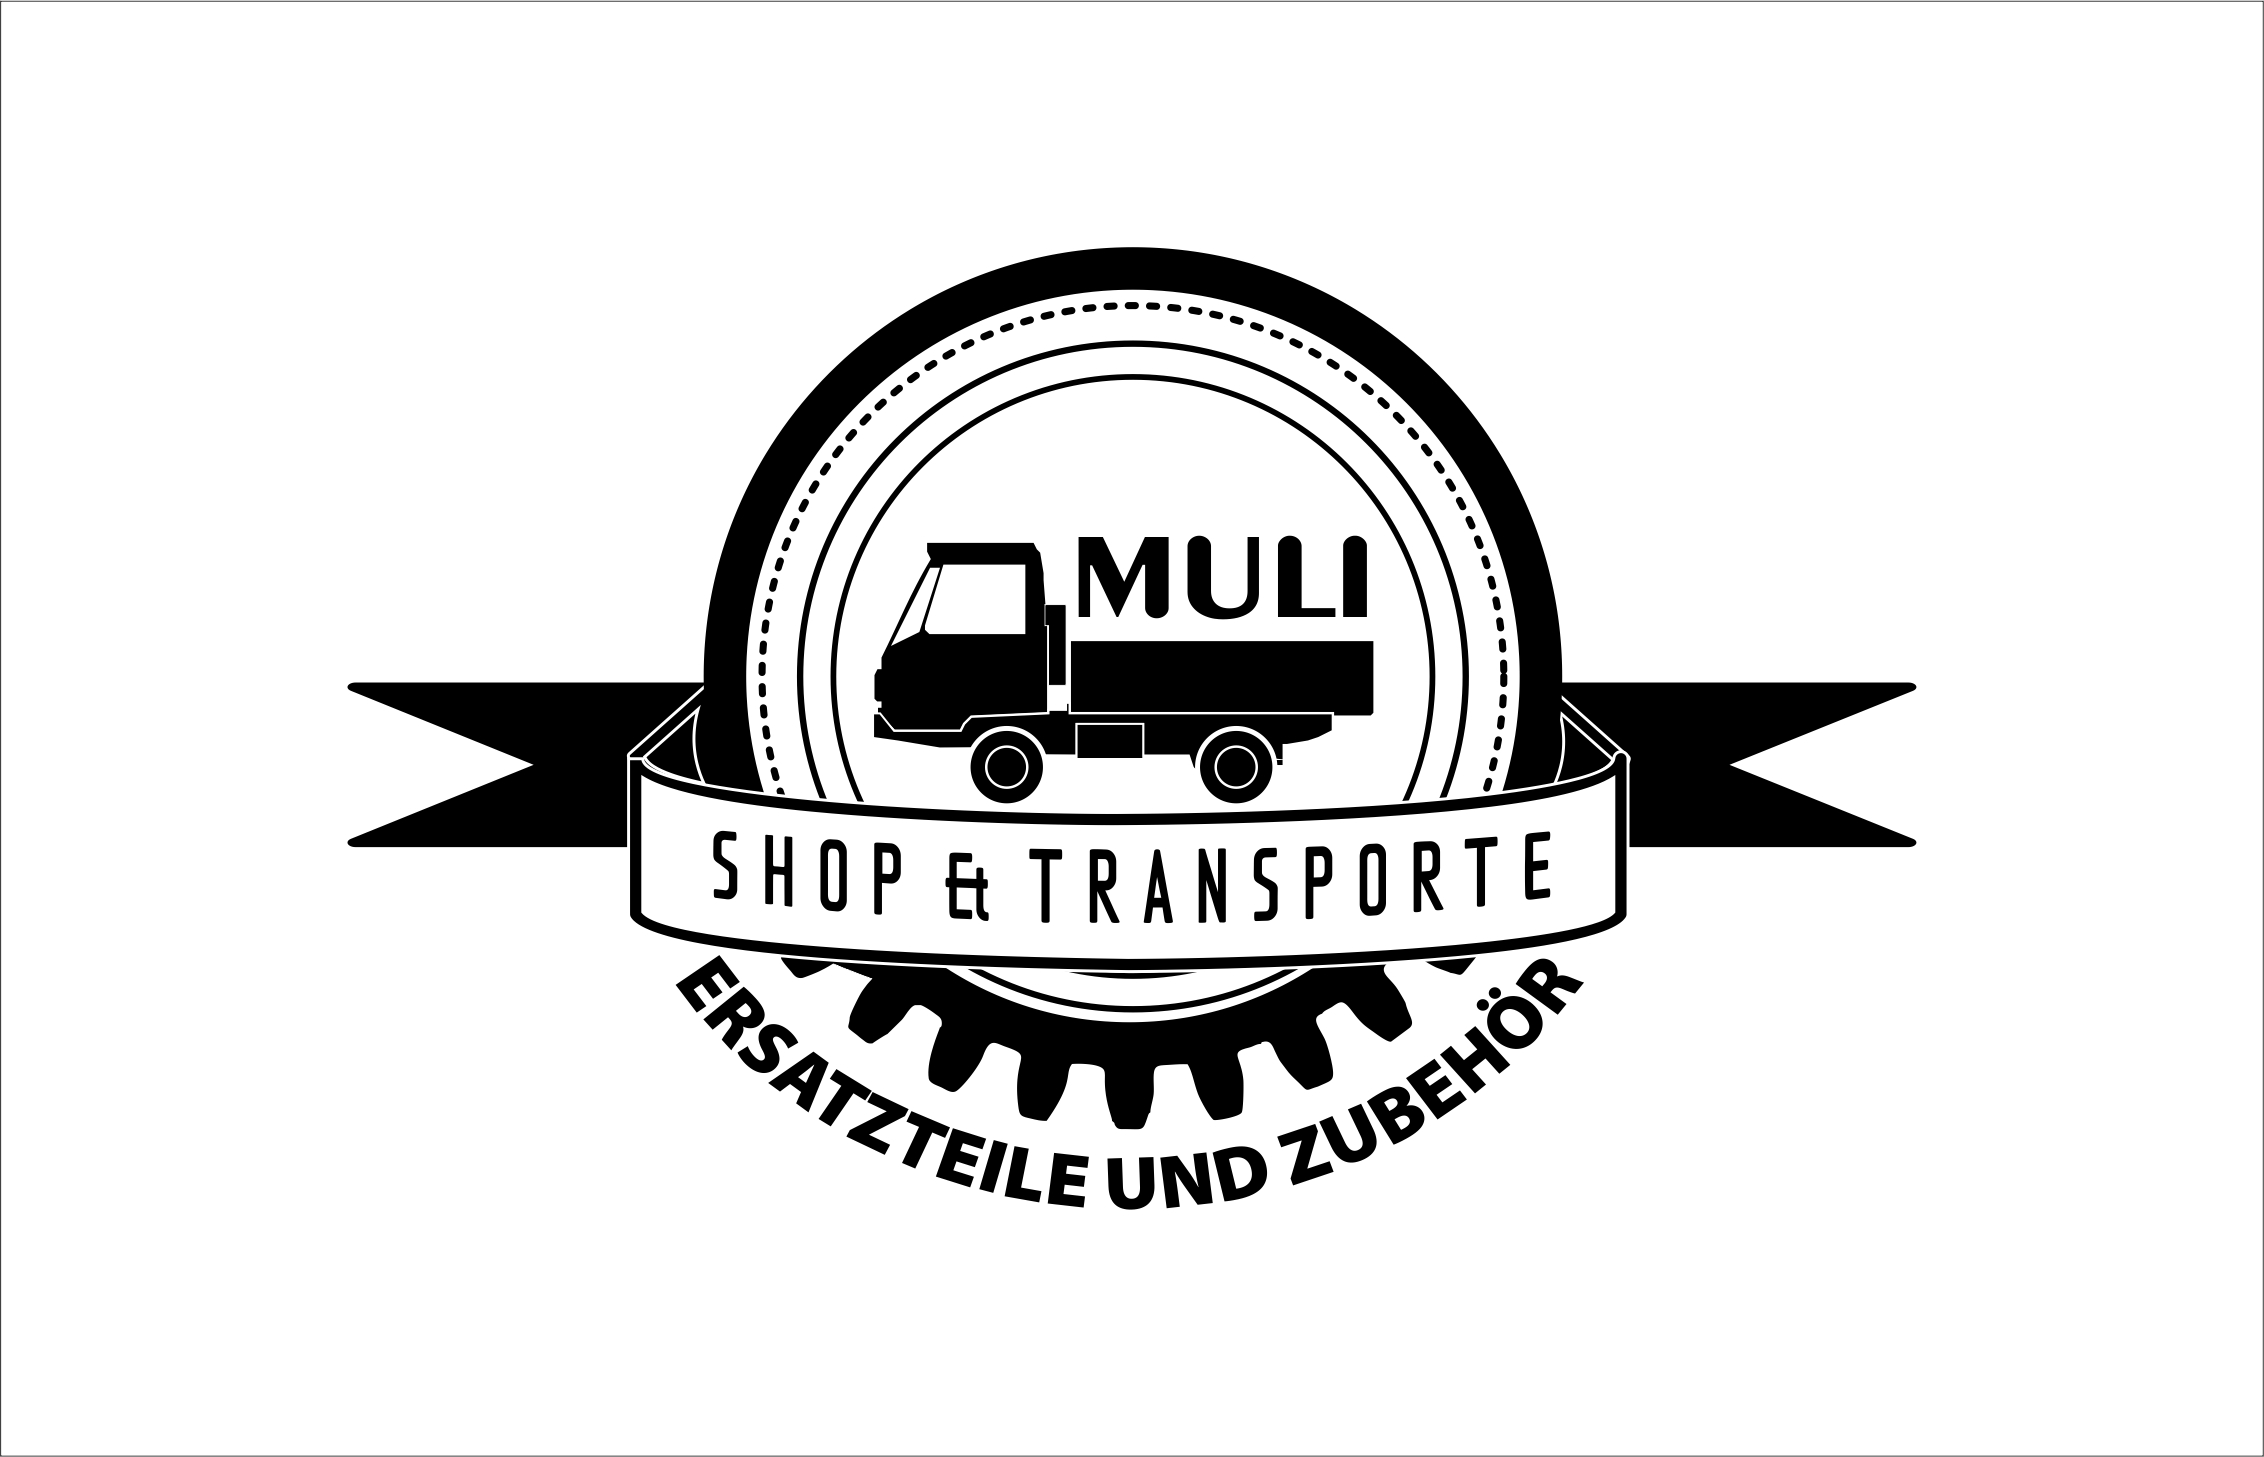 Muli Shop & Transporte